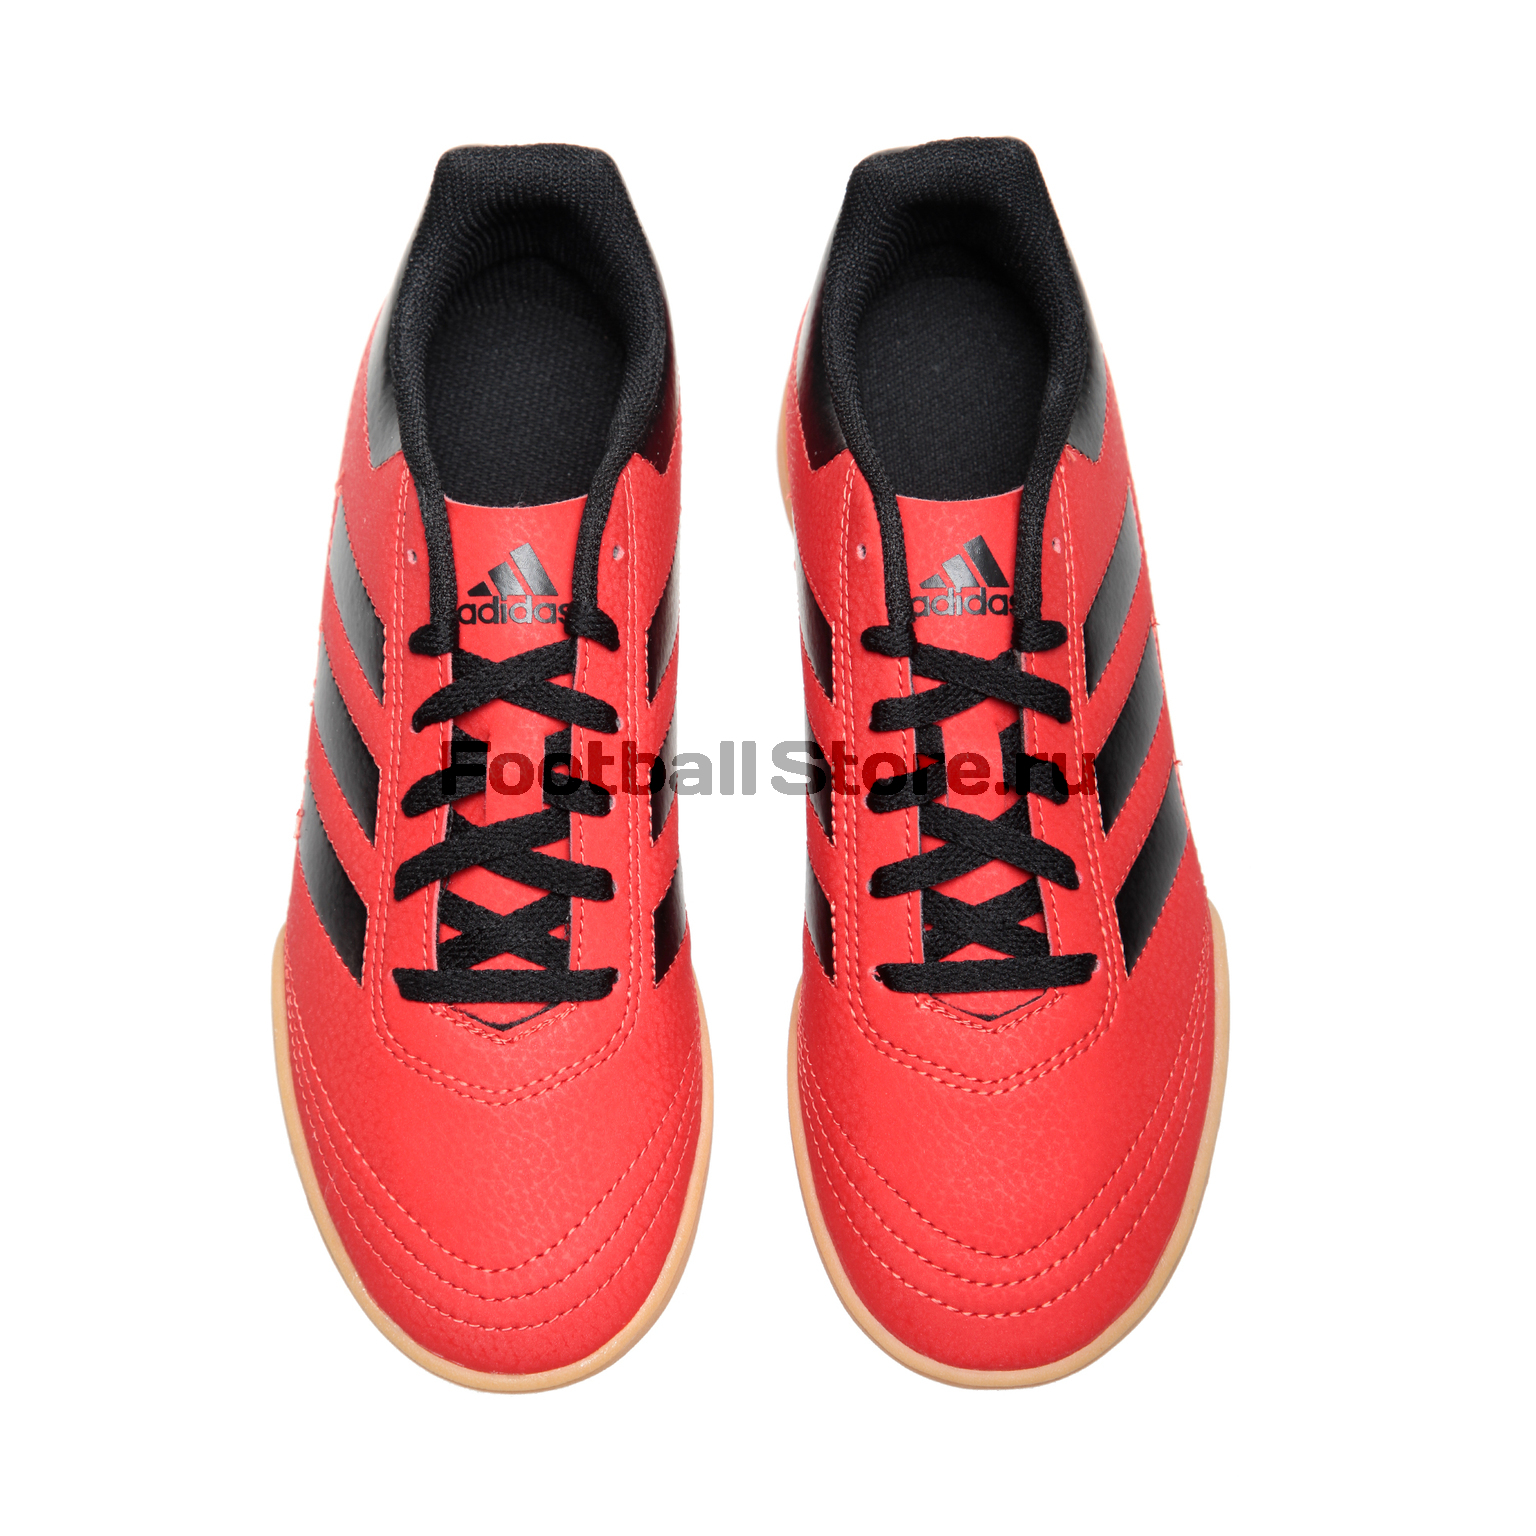 Обувь для зала Adidas Goletto VI IN JR S81099 